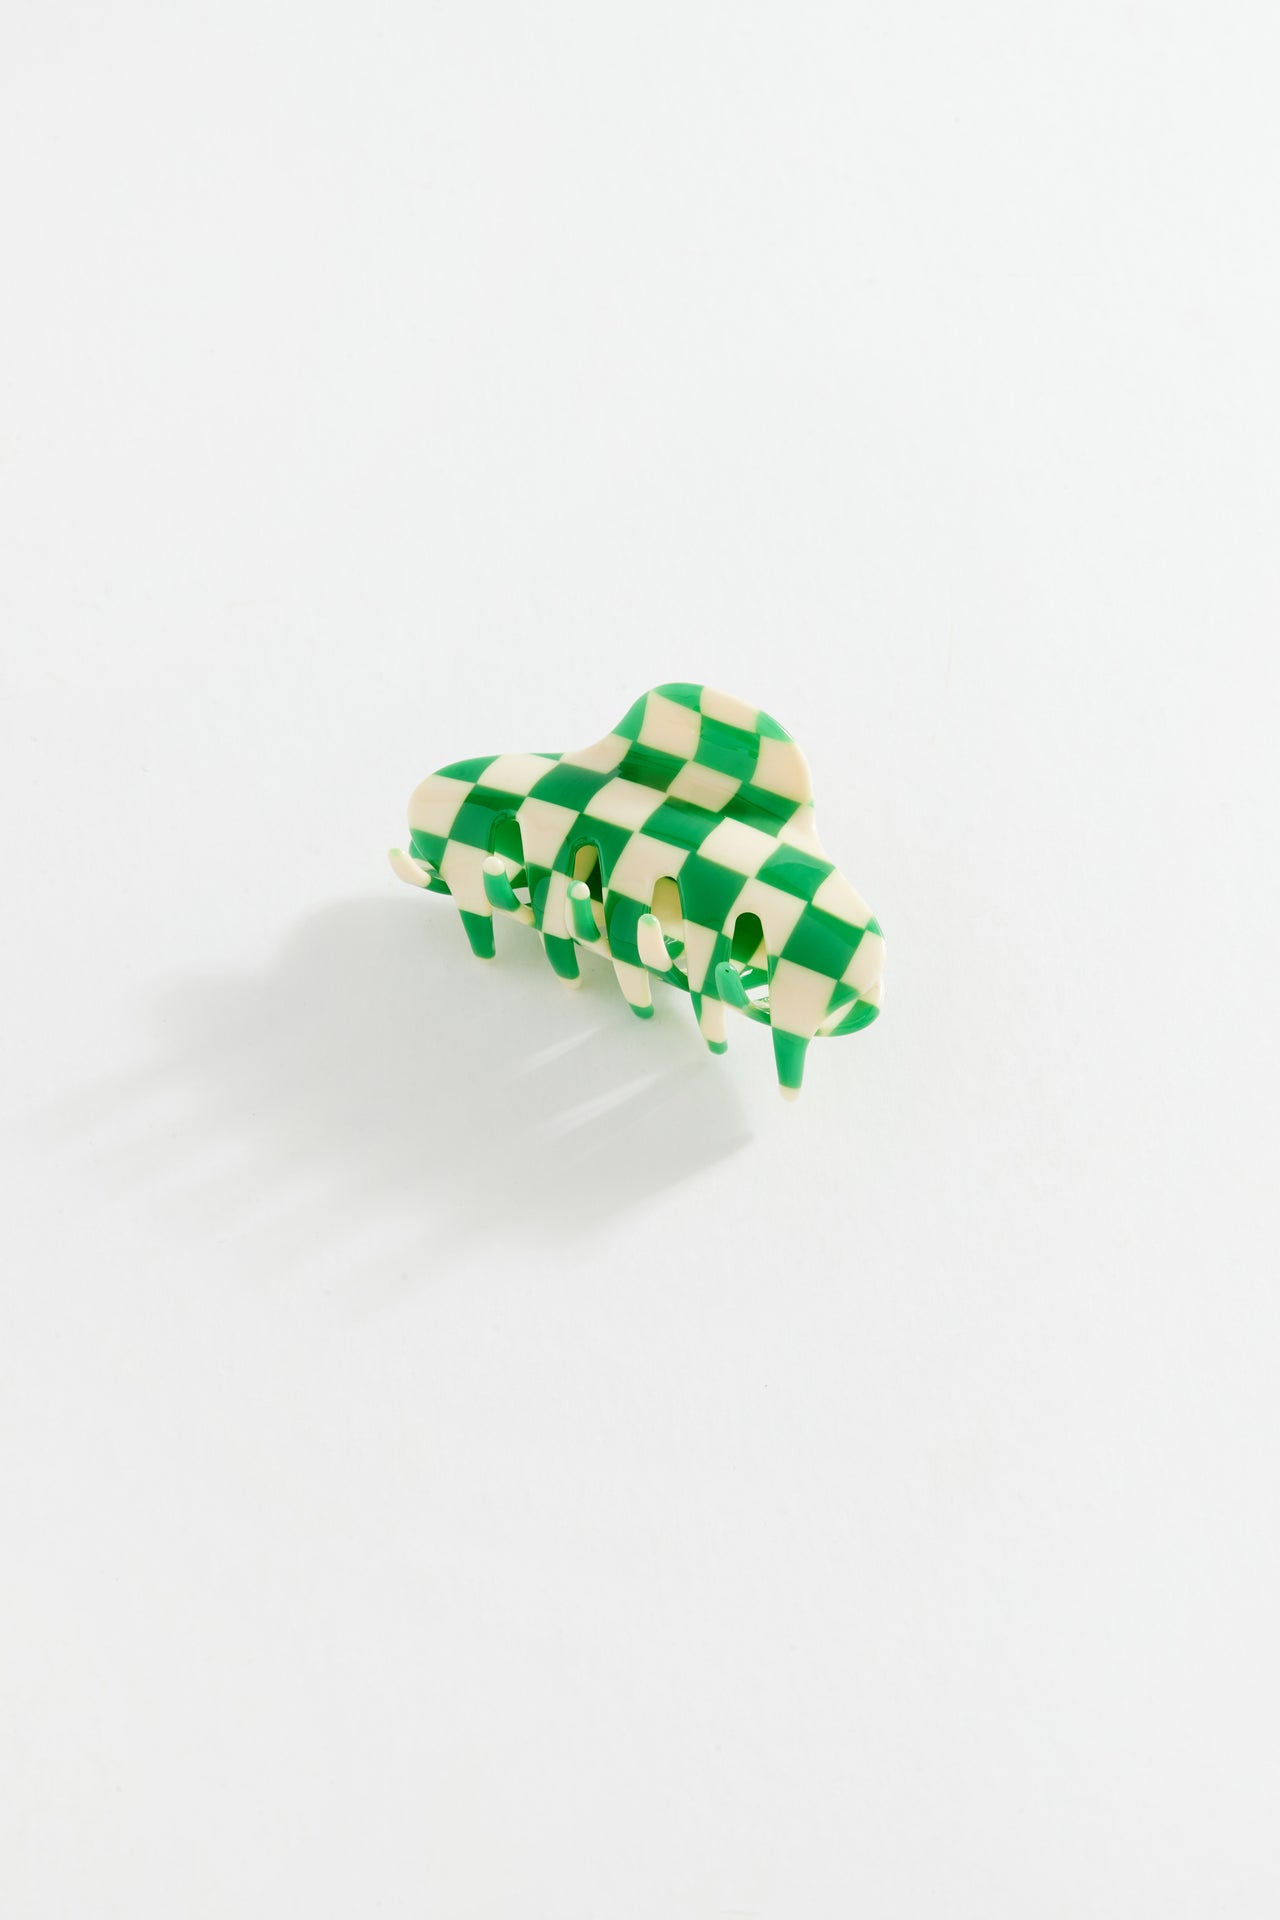 Chequered Agata Clip Green